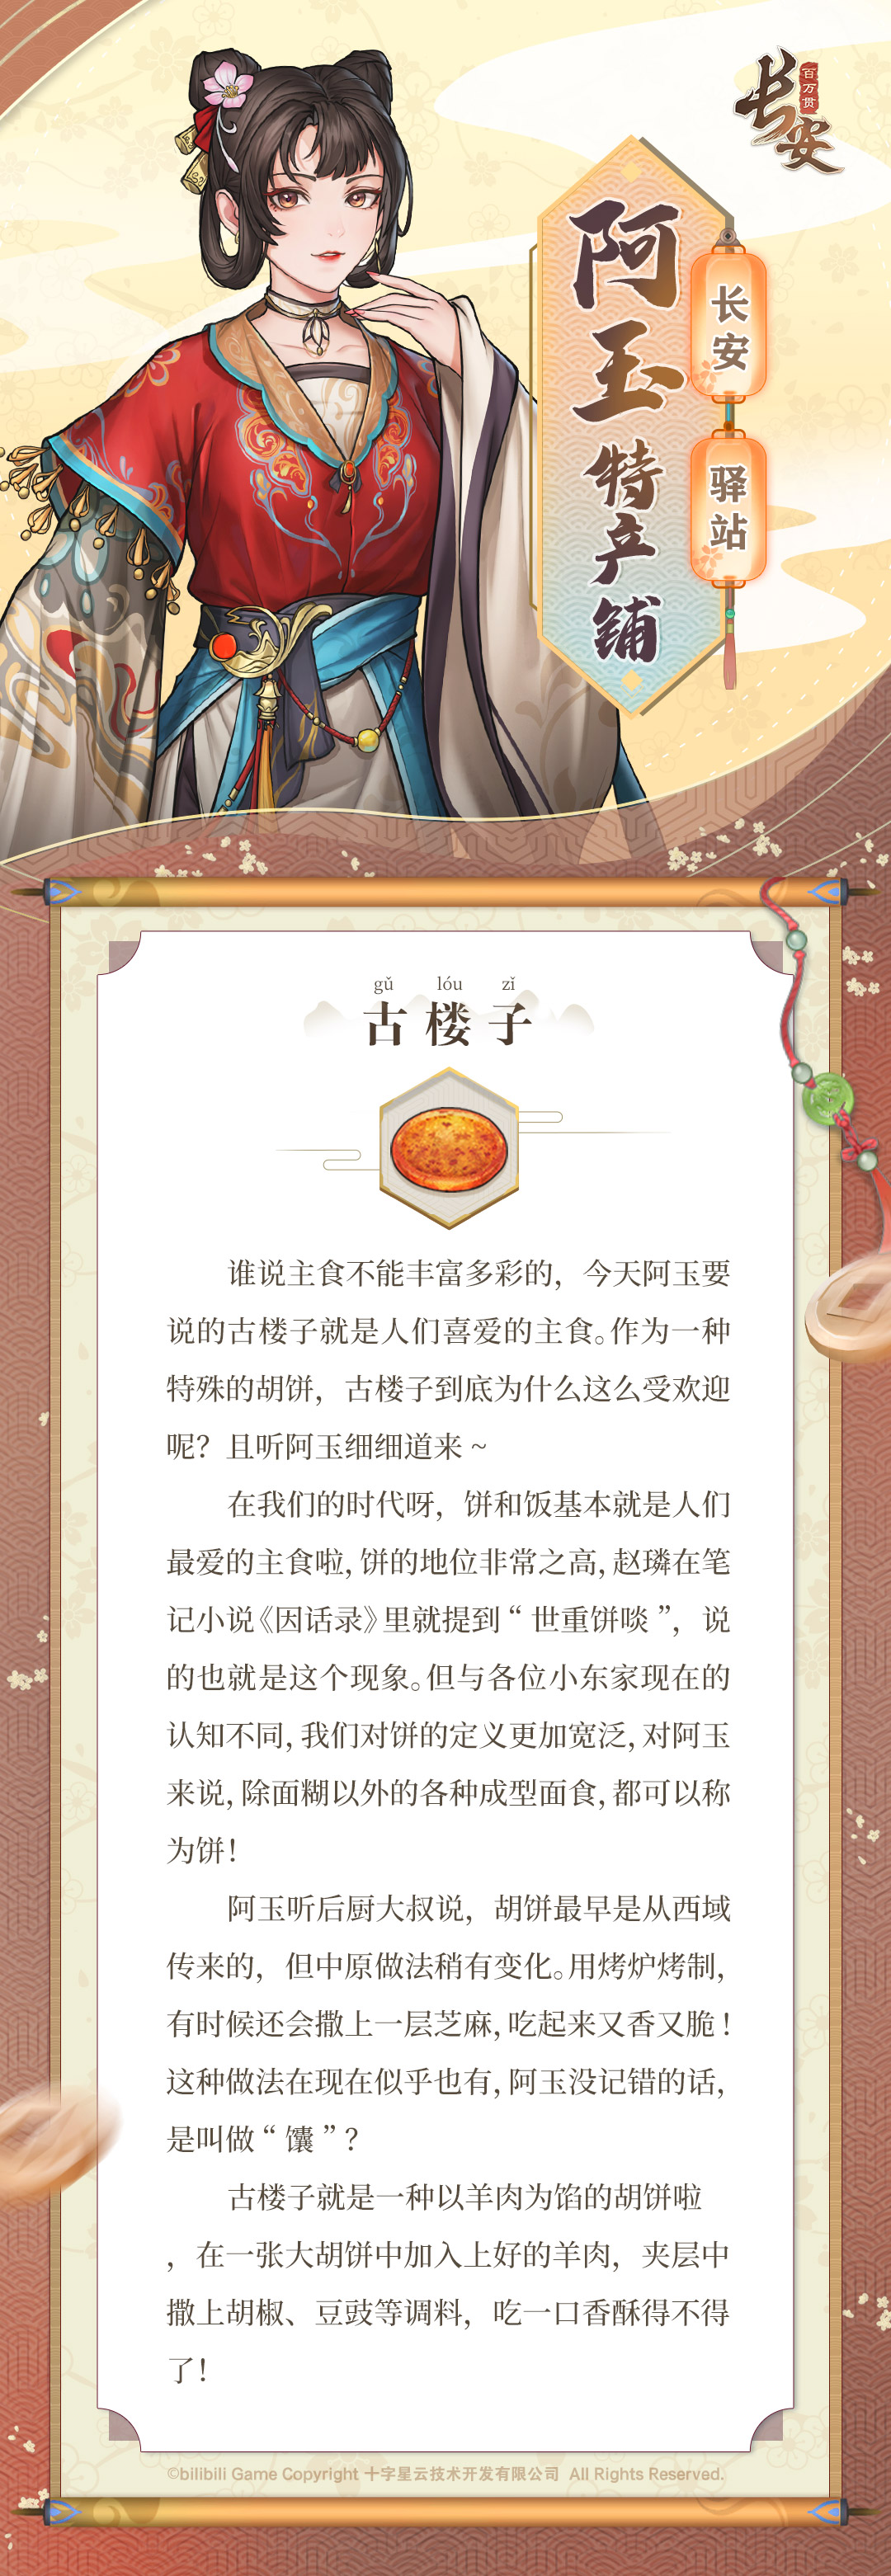 冬至来了~阿玉给东家们带来了香喷喷的庆州的小吃【古楼子】